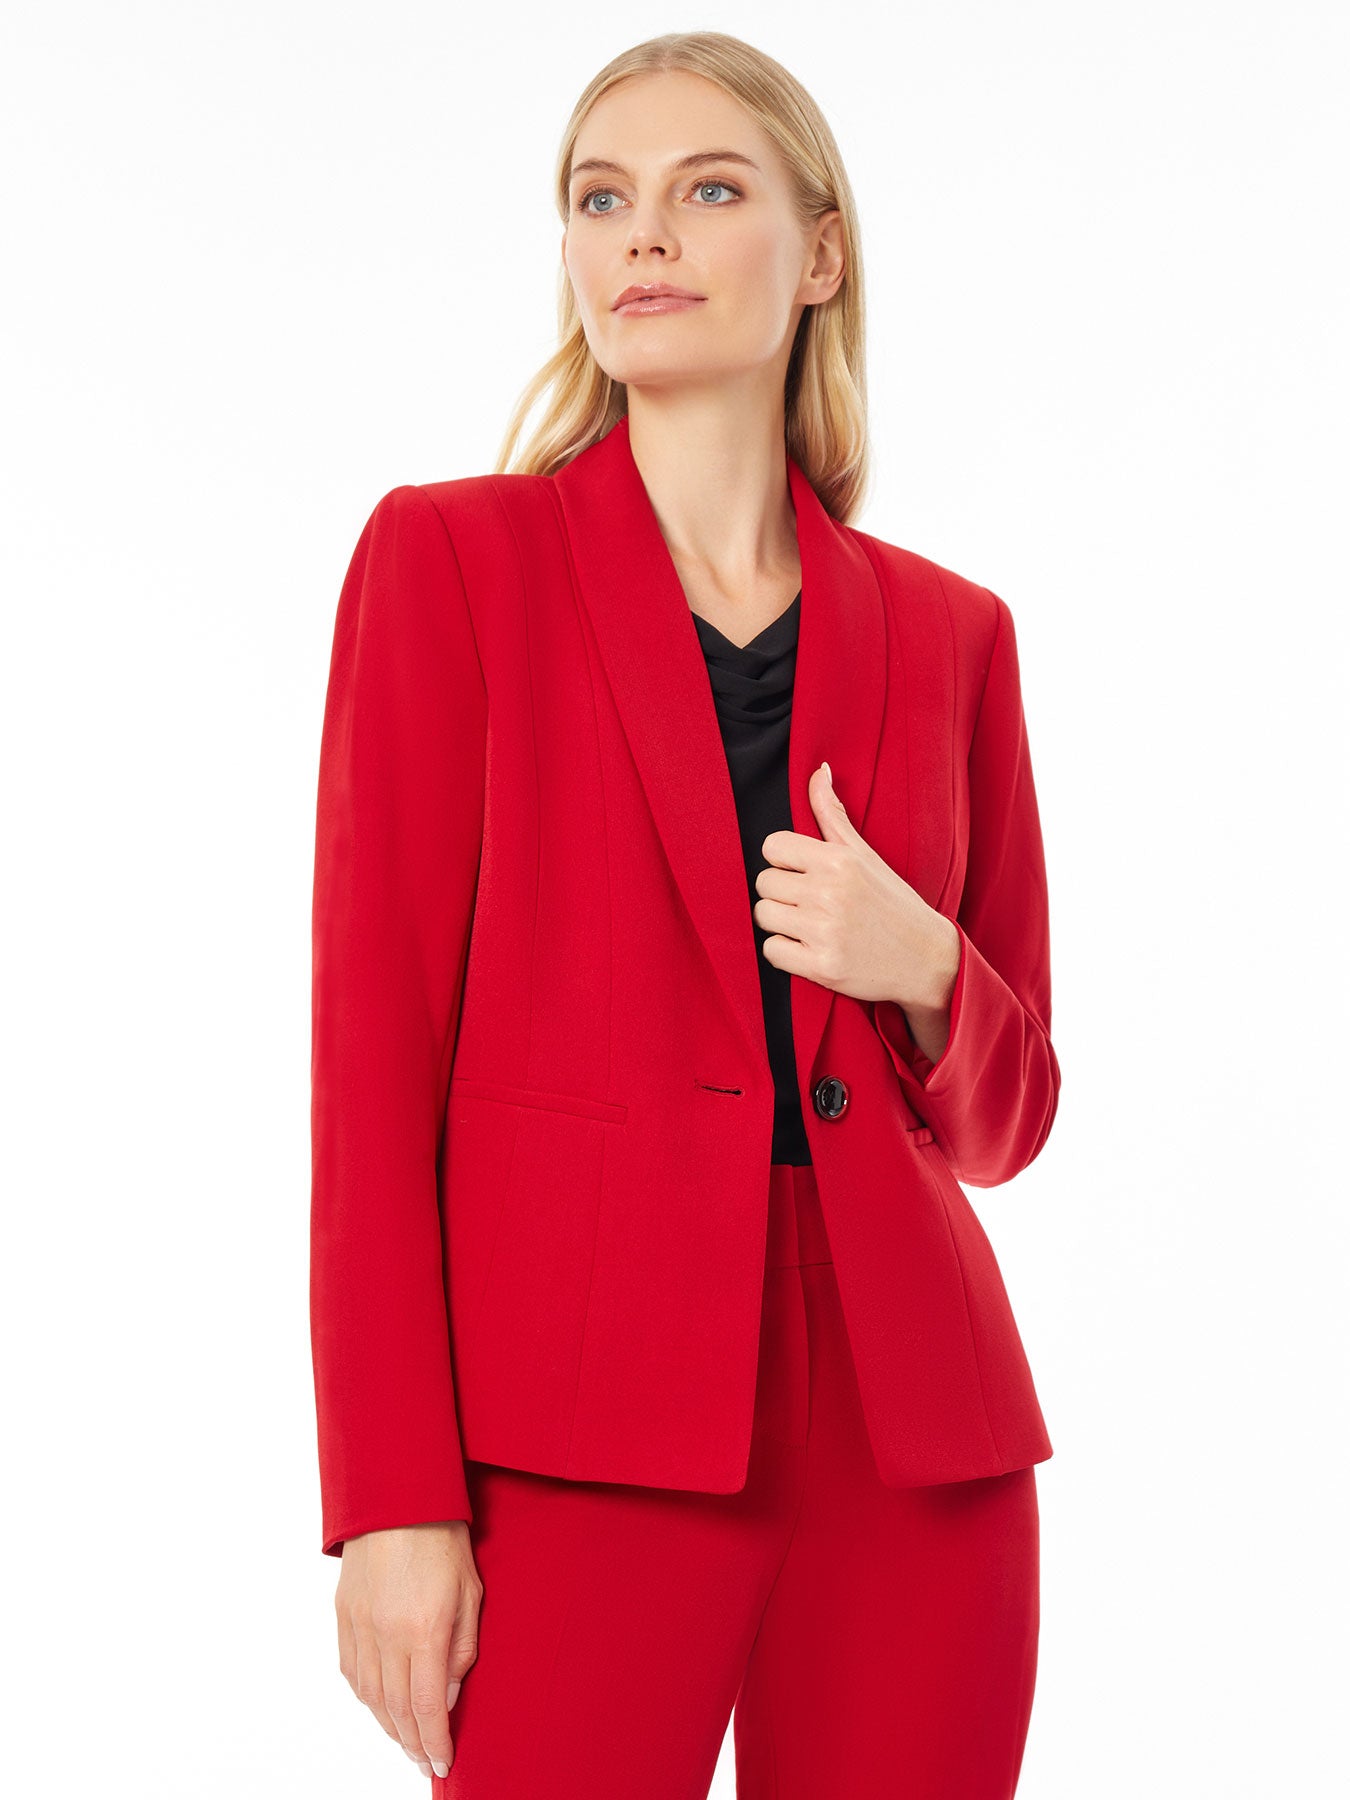 Women's Blazers - Business Casual Jacket | Kasper